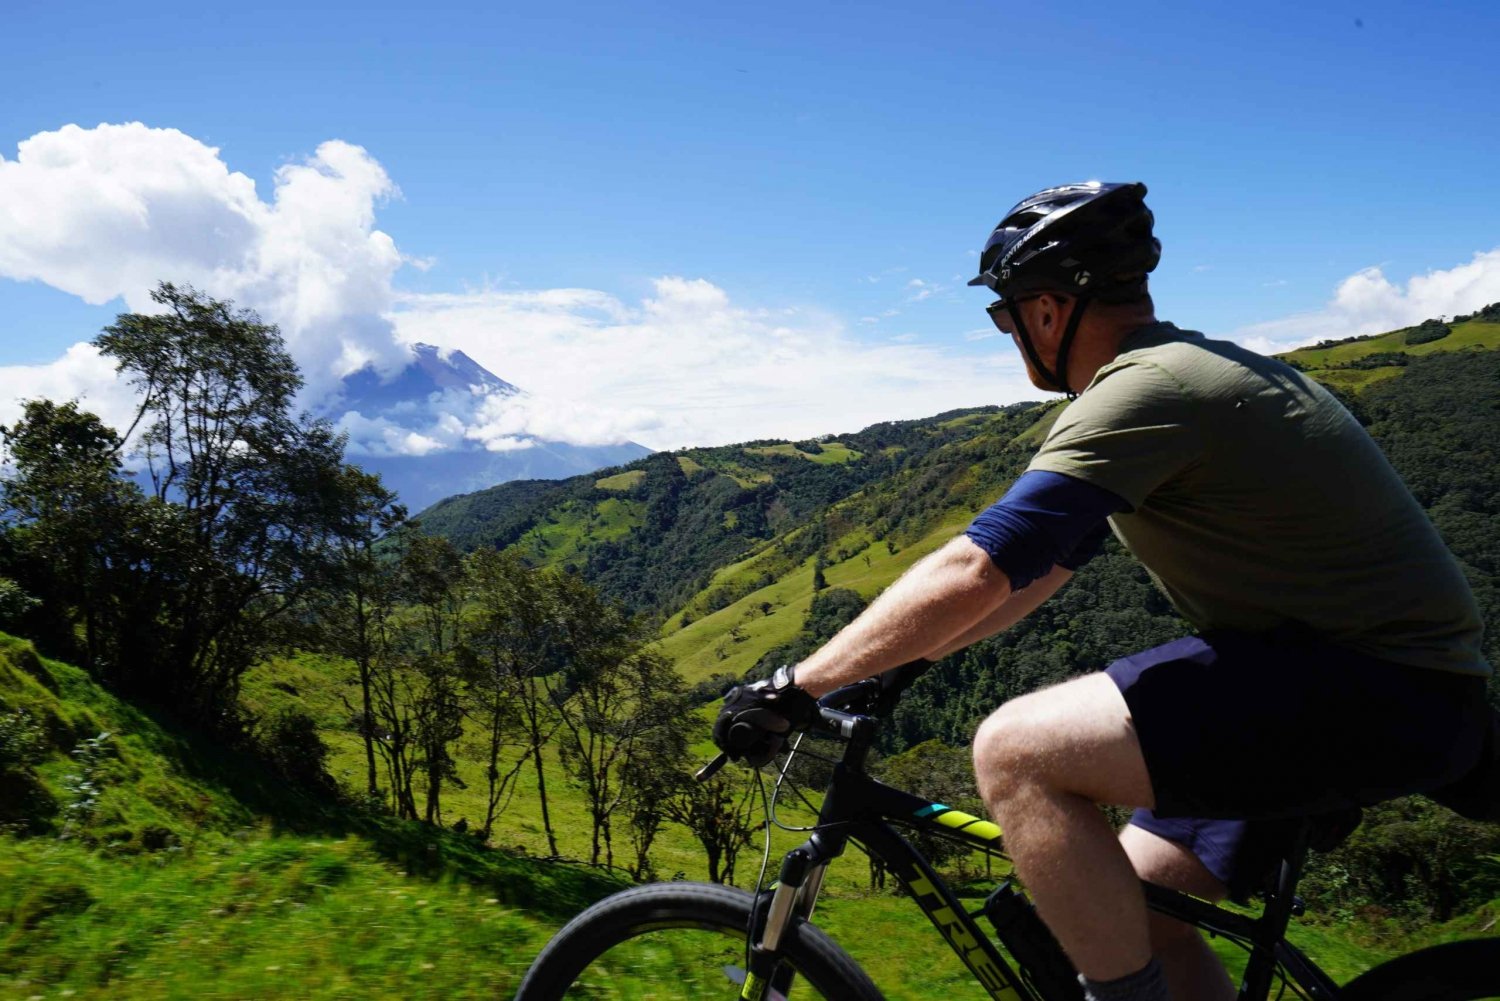 Ecuador Active: Vandra, cykla, forsränna i Anderna och Amazonas